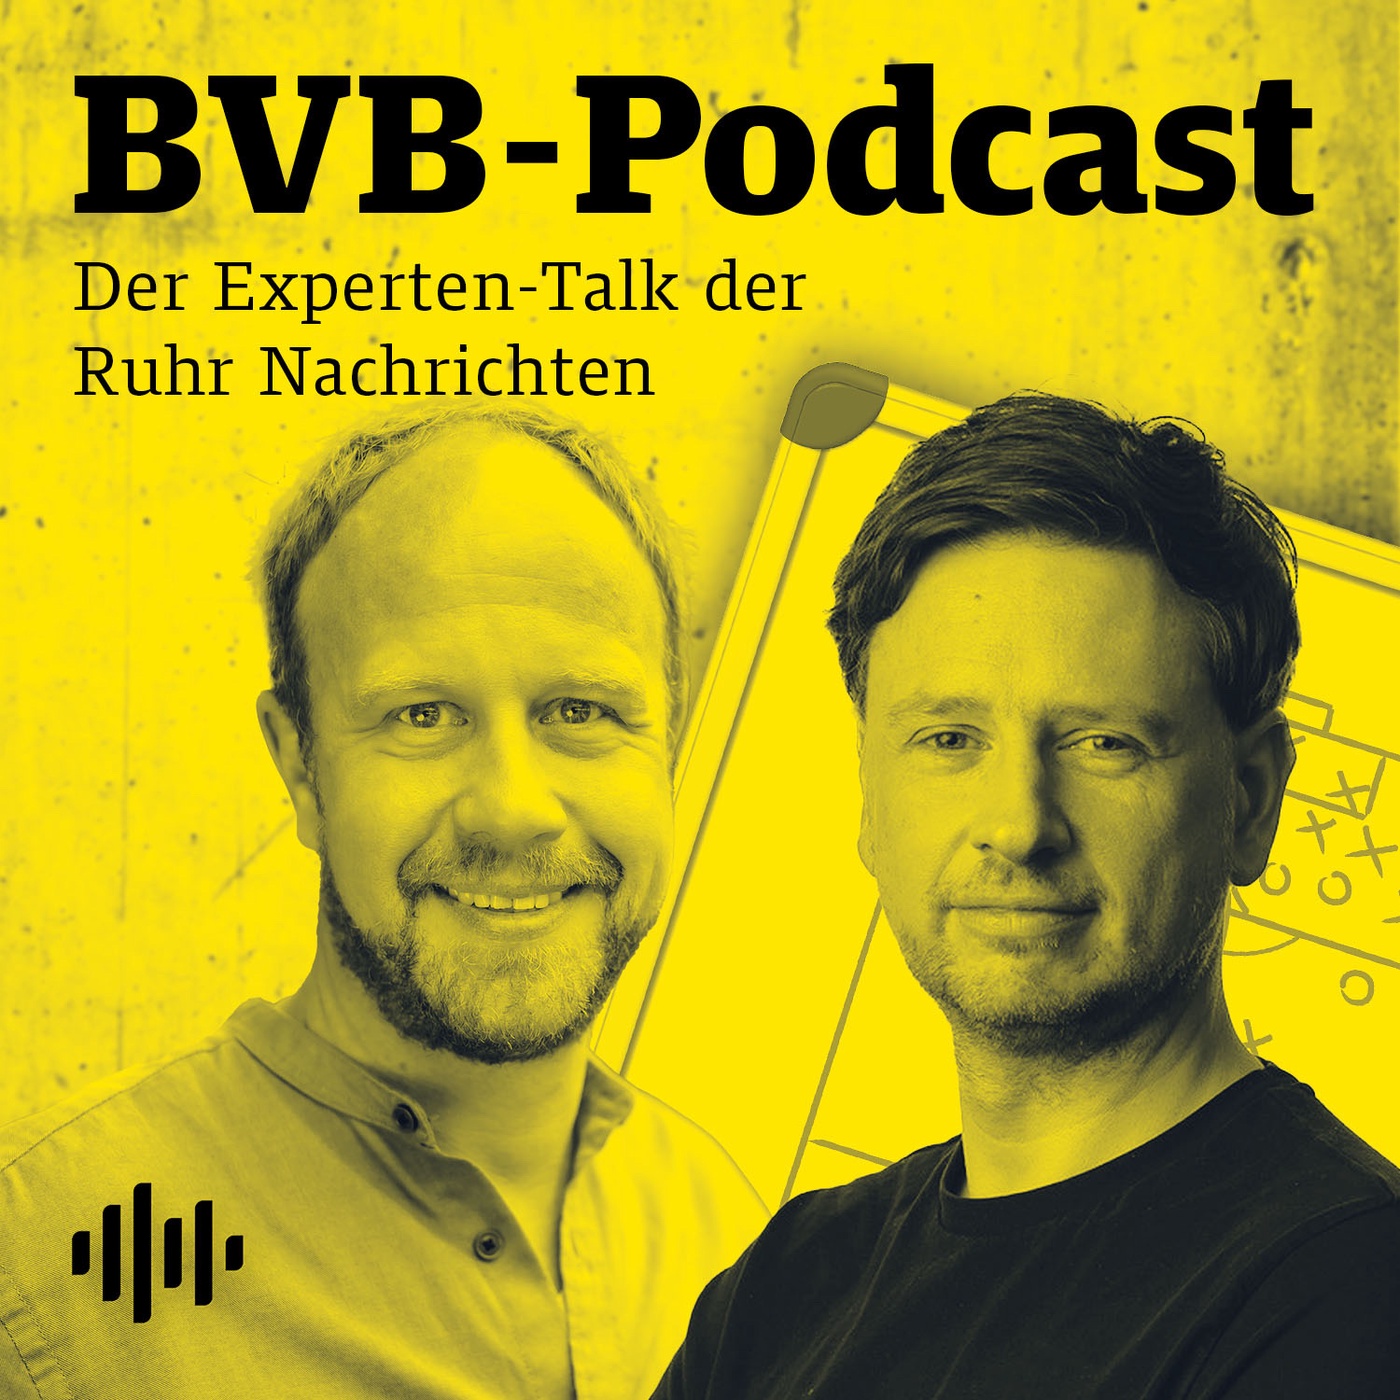 Episode #445: Guirassy wird etwas günstiger, BVB-Talentjagd mit hohem Risiko